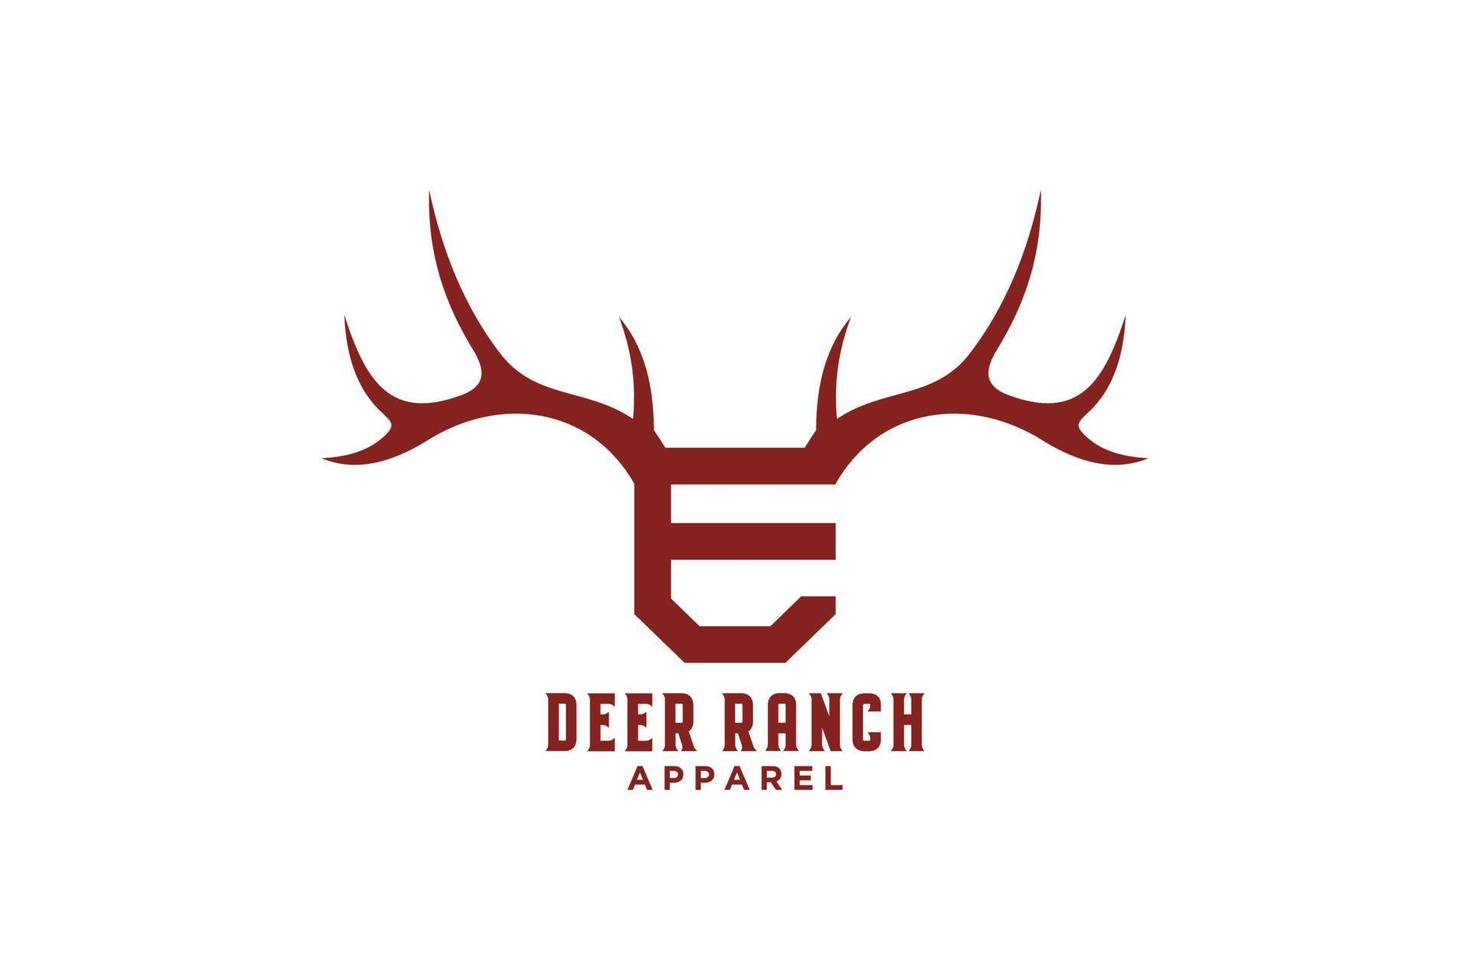 Letter E antlers, deer horn logo design vector